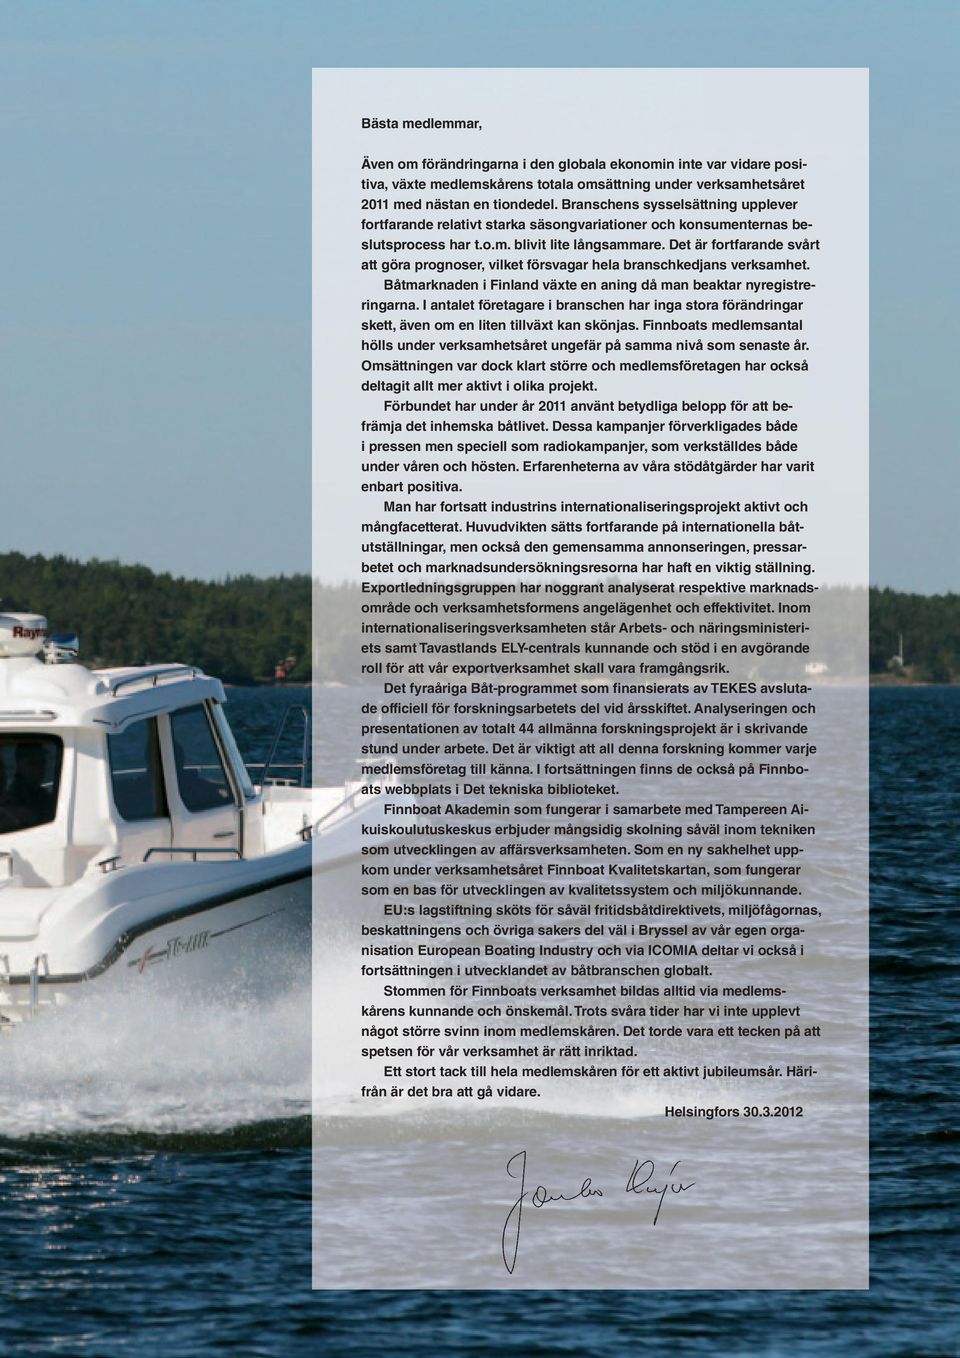 Det är fortfarande svårt att göra prognoser, vilket försvagar hela branschkedjans verksamhet. Båtmarknaden i Finland växte en aning då man beaktar nyregistreringarna.